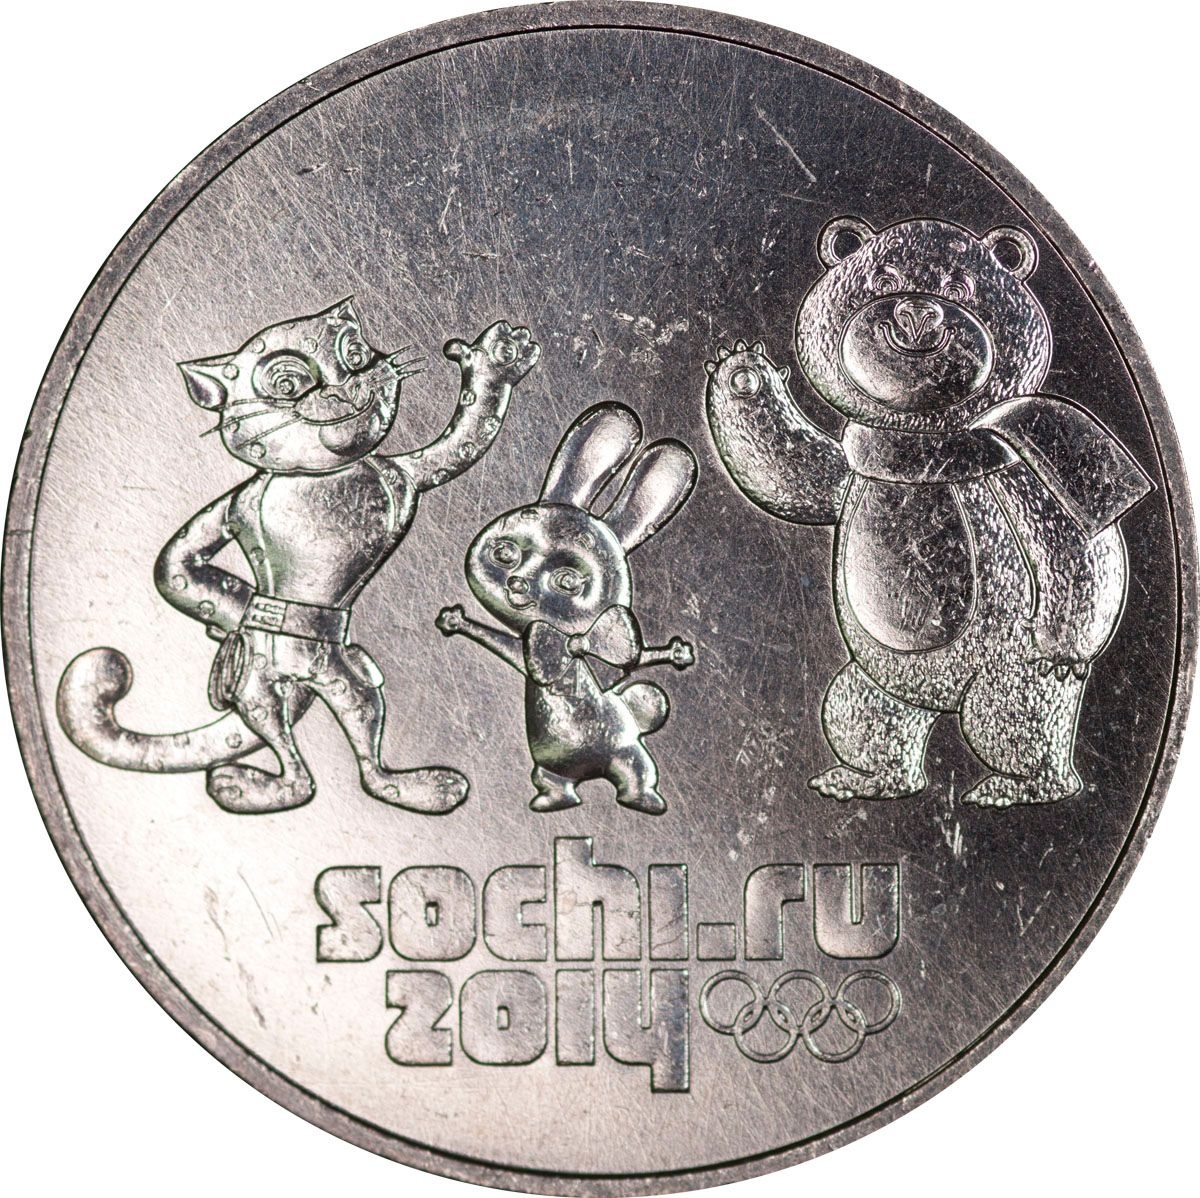 Купить монету сочи. Монеты Сочи 2014. 25 Рублей. 25 Рублей Медно никель. 25 Рублей 2014 года Сочи.